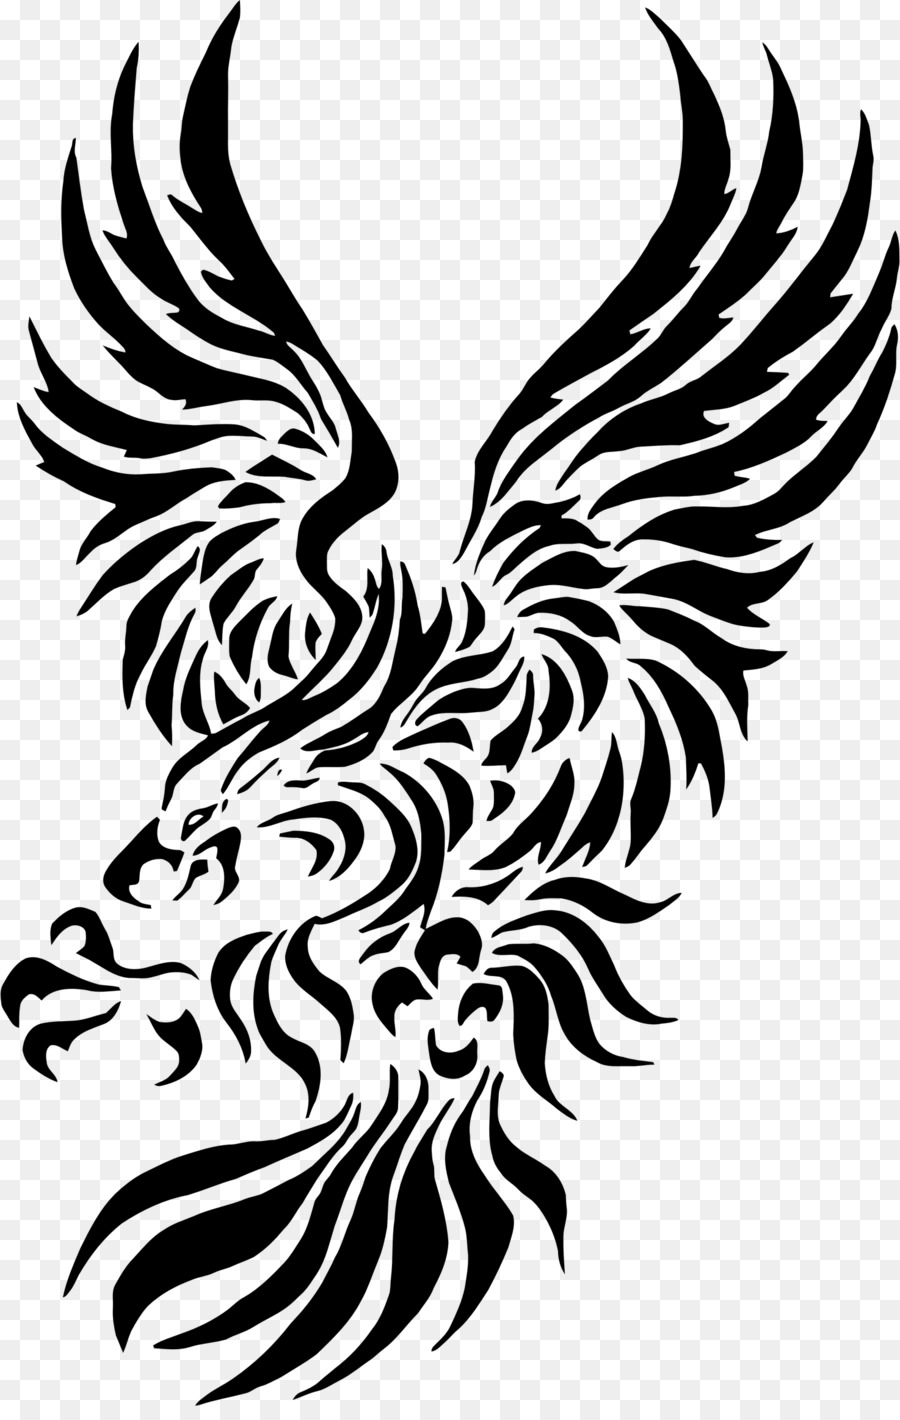 Bald Eagle Golden eagle Clip art - eagle wings tattoo png download - 1474*2302 - Free Transparent Bald Eagle png Download.